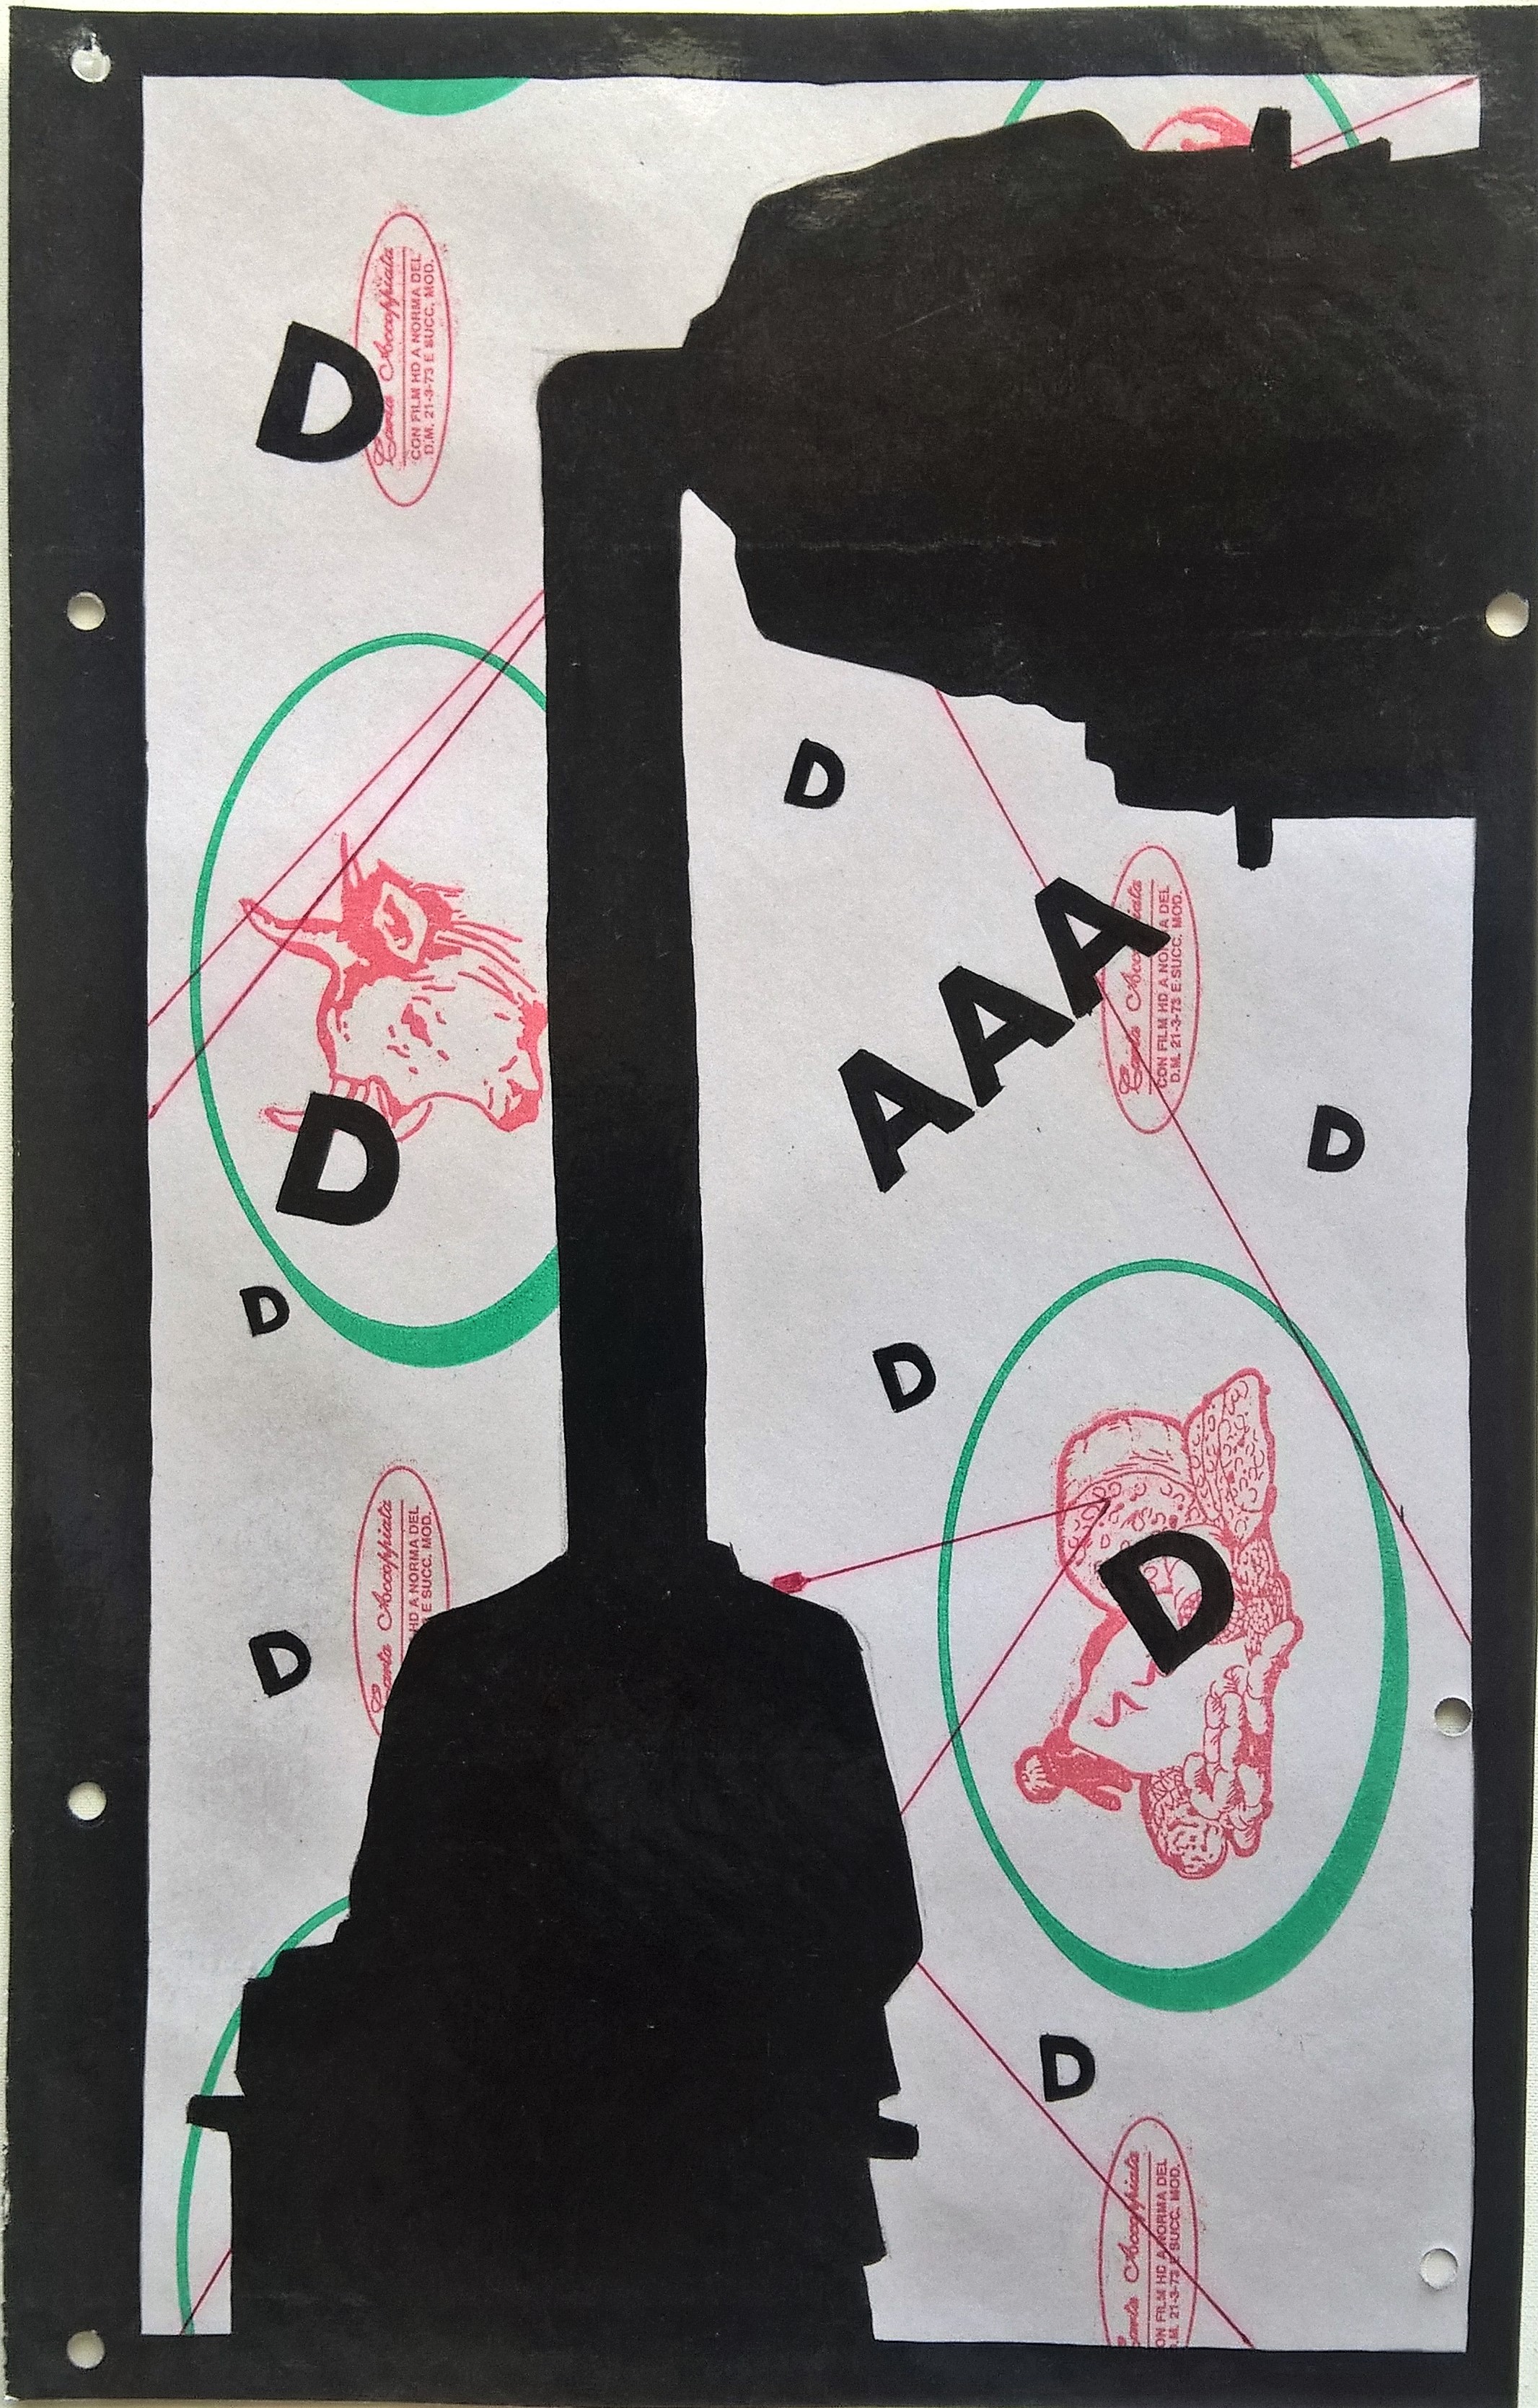 Prova d'autore, 06/01/2017,disegno eseguito con penna nera e nero acrilico su carta politenata (carta per alimenti usata in macelleria) successivamente plastificata,Pasquale Mastrogiacomo, Acerno(SA).